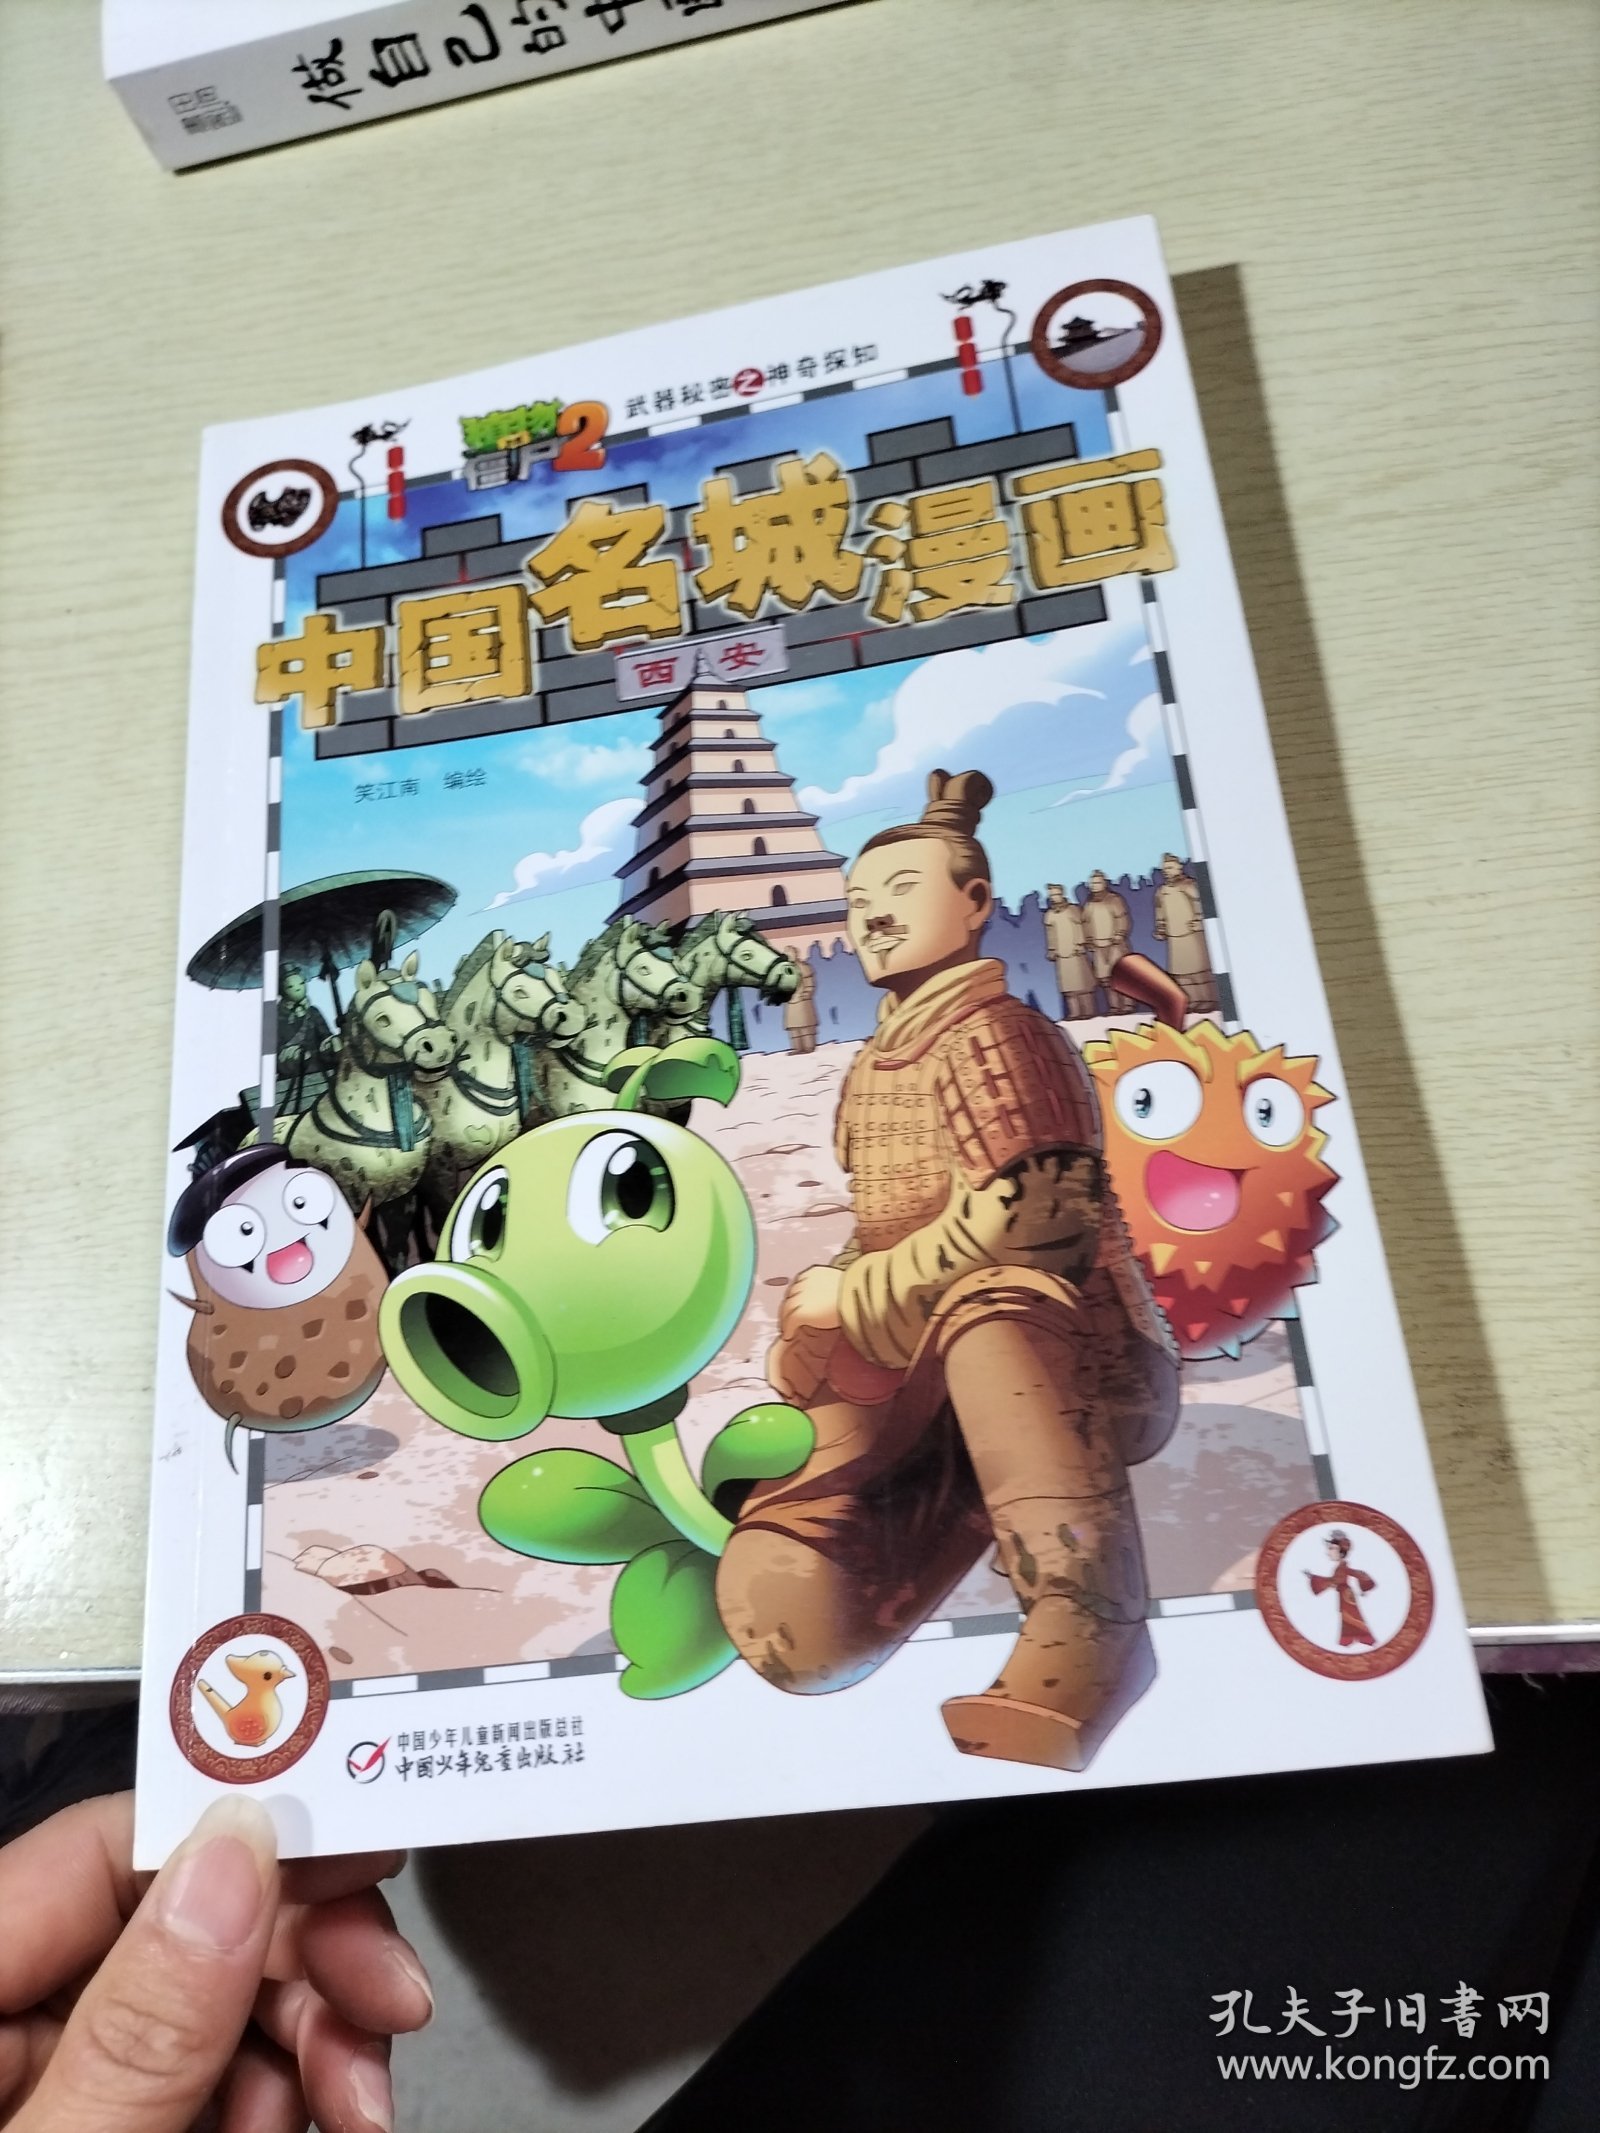 植物大战僵尸2武器秘密之神奇探知中国名城漫画·西安